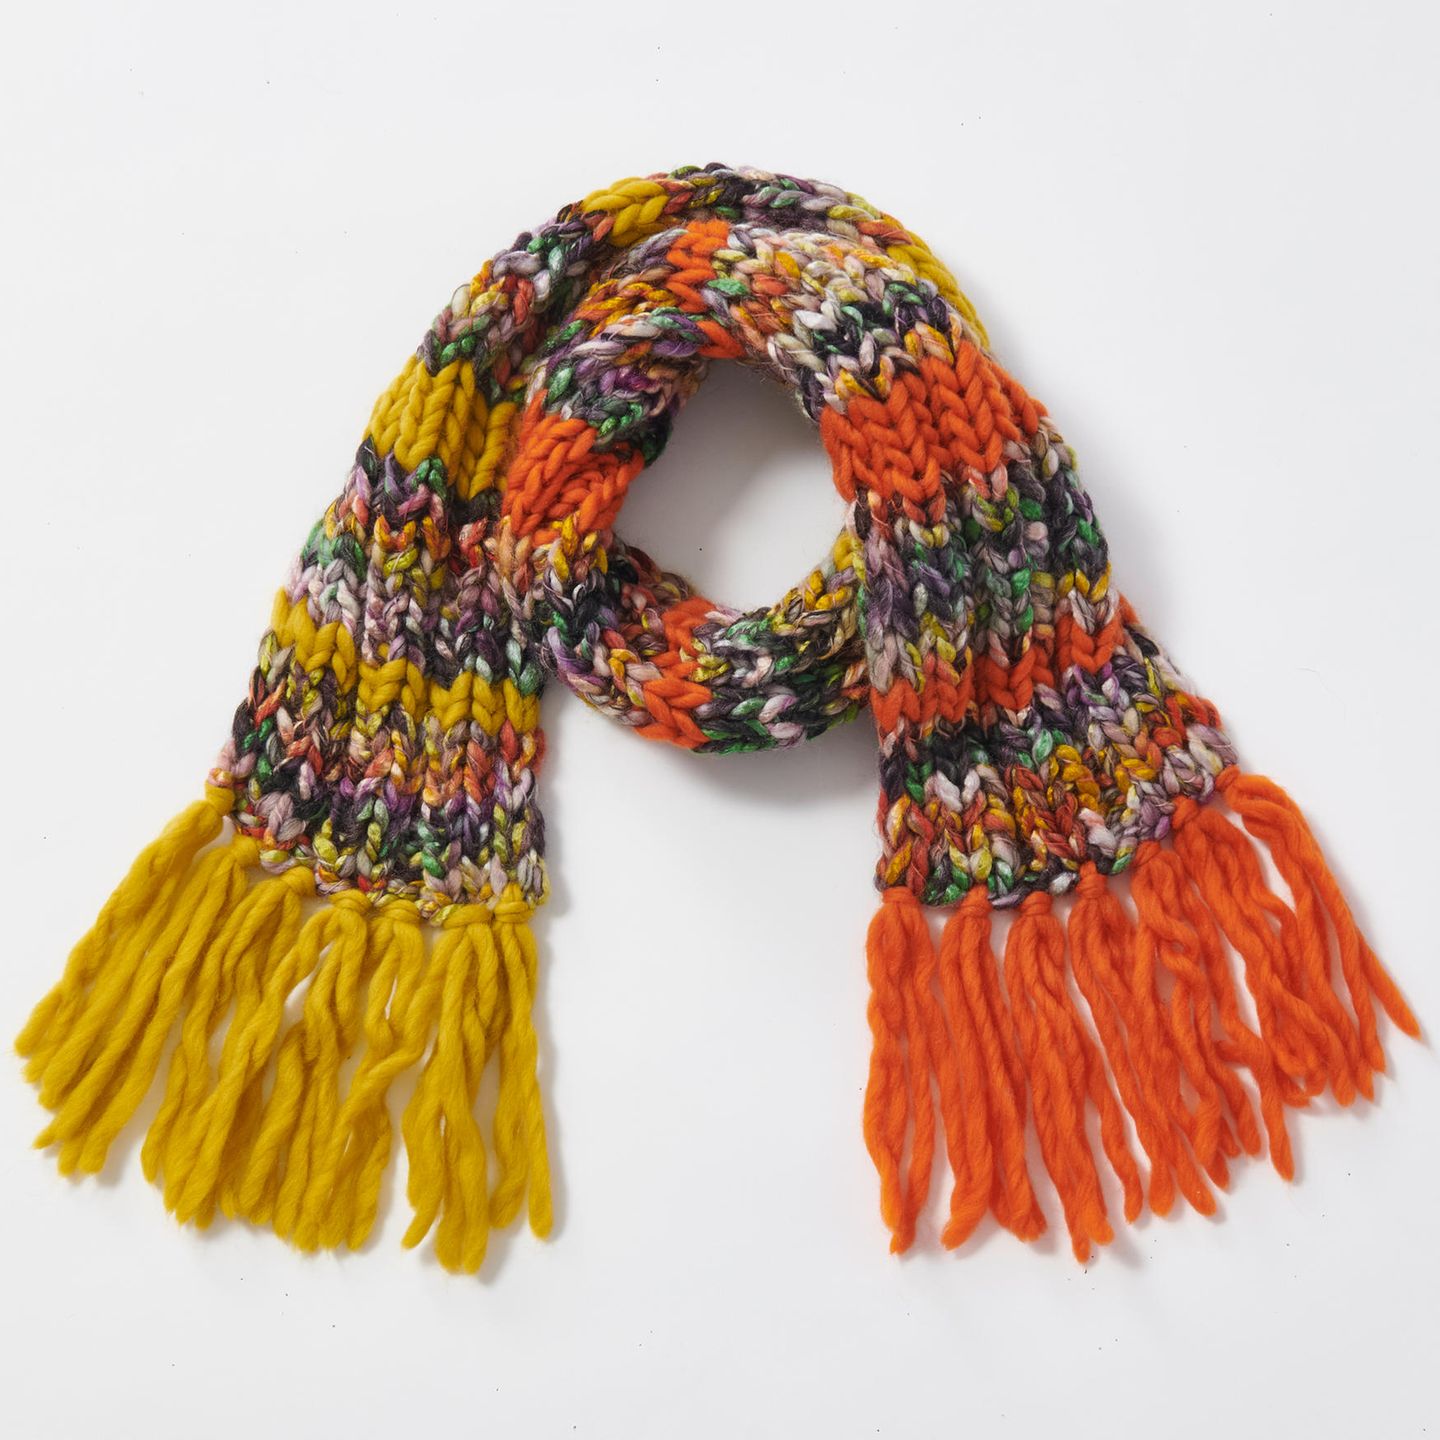 Rippen-Schal stricken: ein bunter Schal mit Fransen